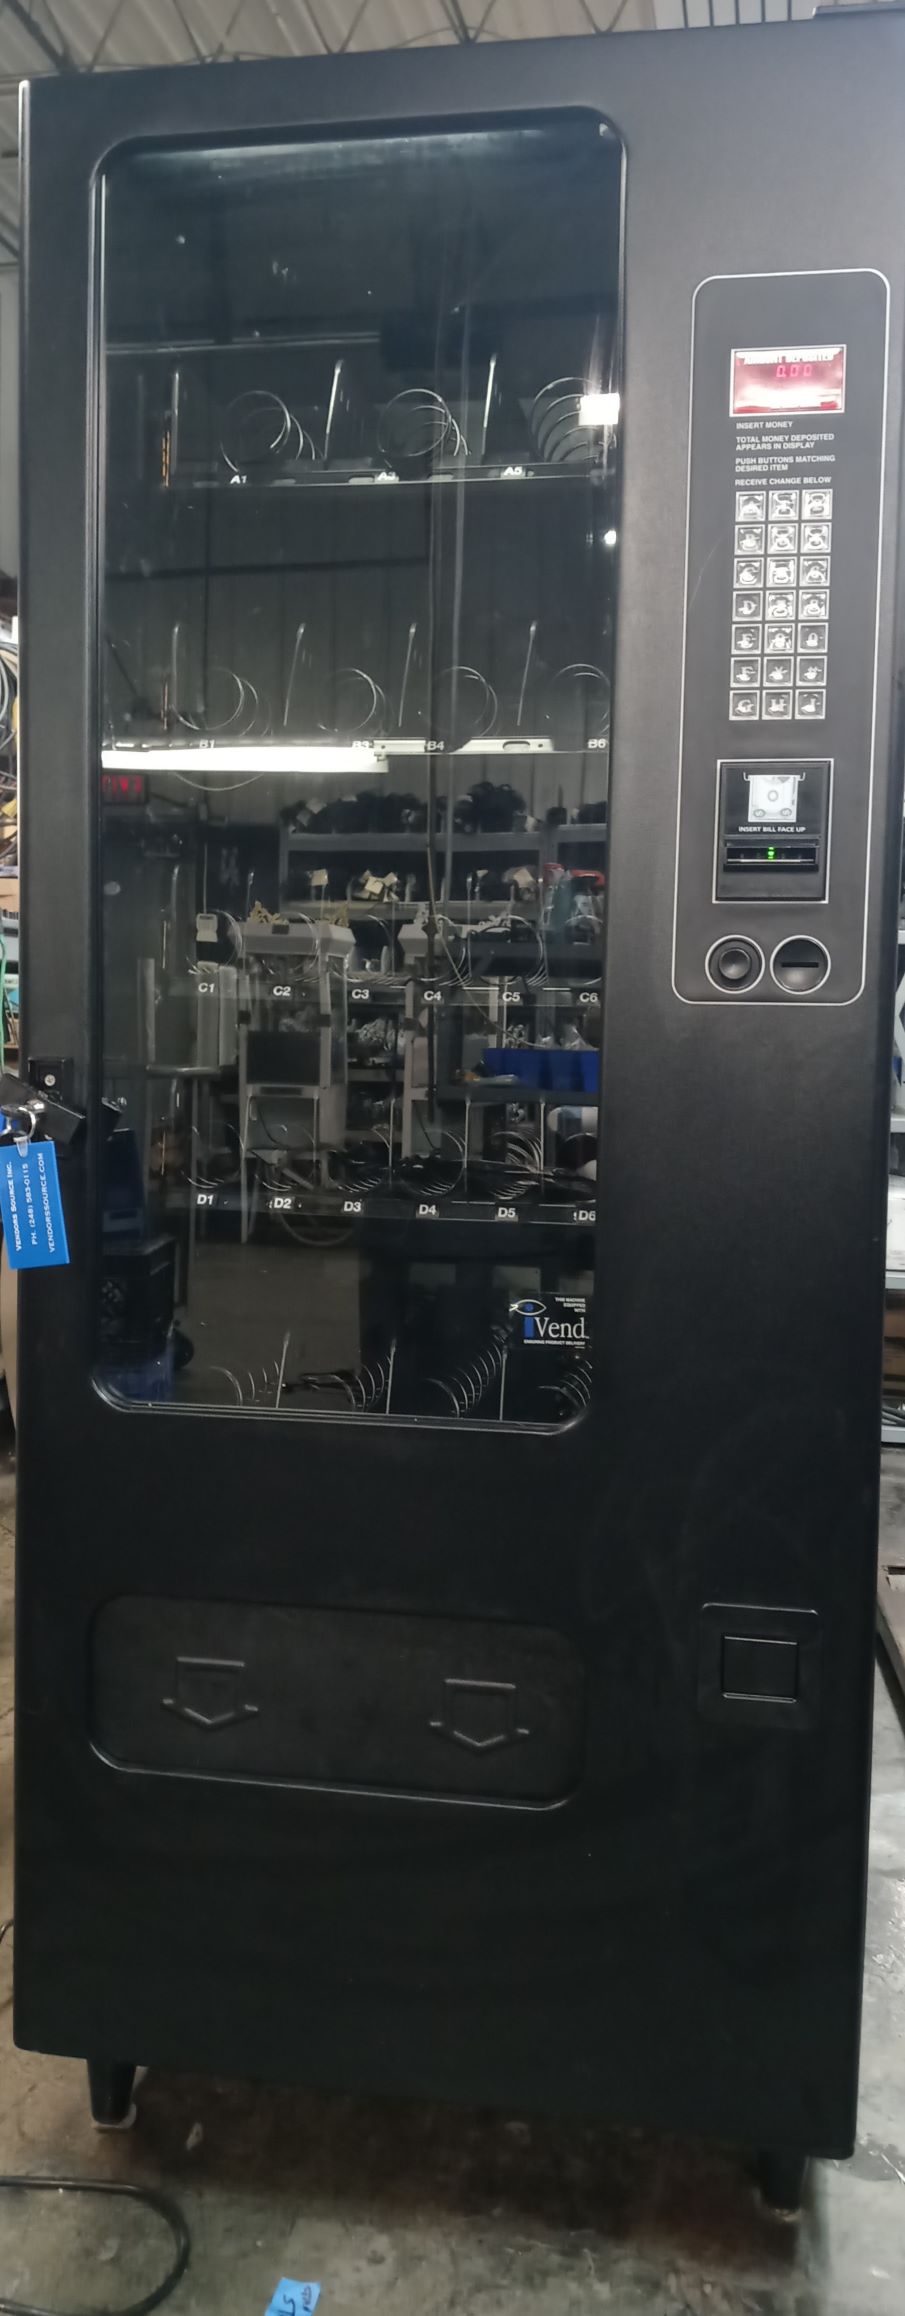 USI 3130 Vending Machine for Sale